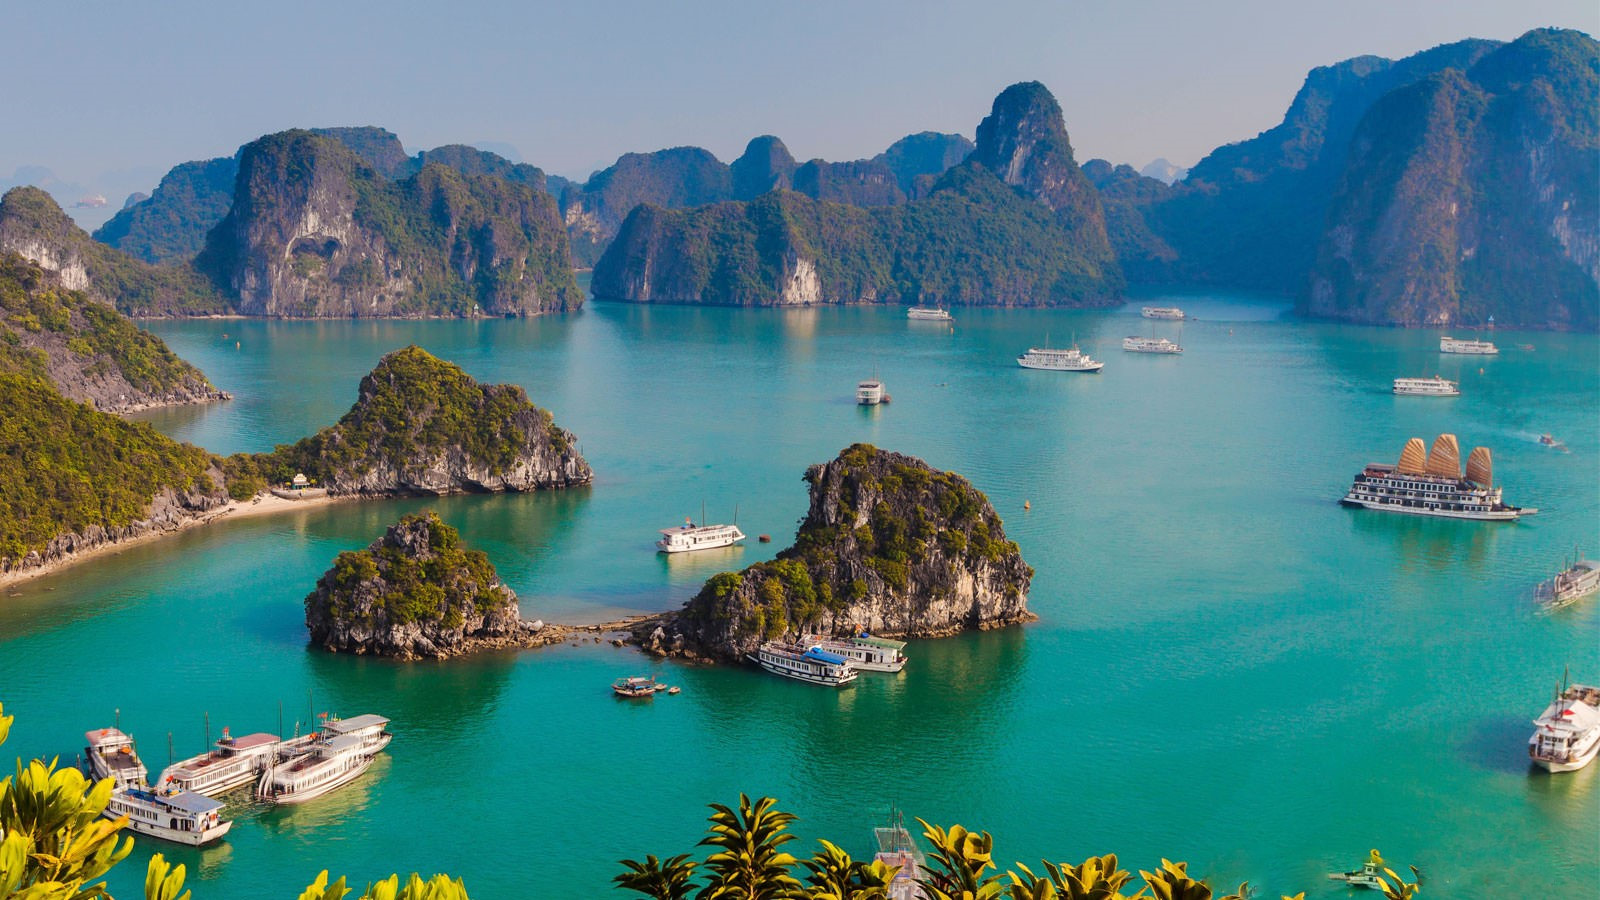 Nhờ phần mềm AI lập kế hoạch du lịch Việt Nam, nữ du khách nhận được cái kết vượt sức tưởng tượng - Ảnh 10.